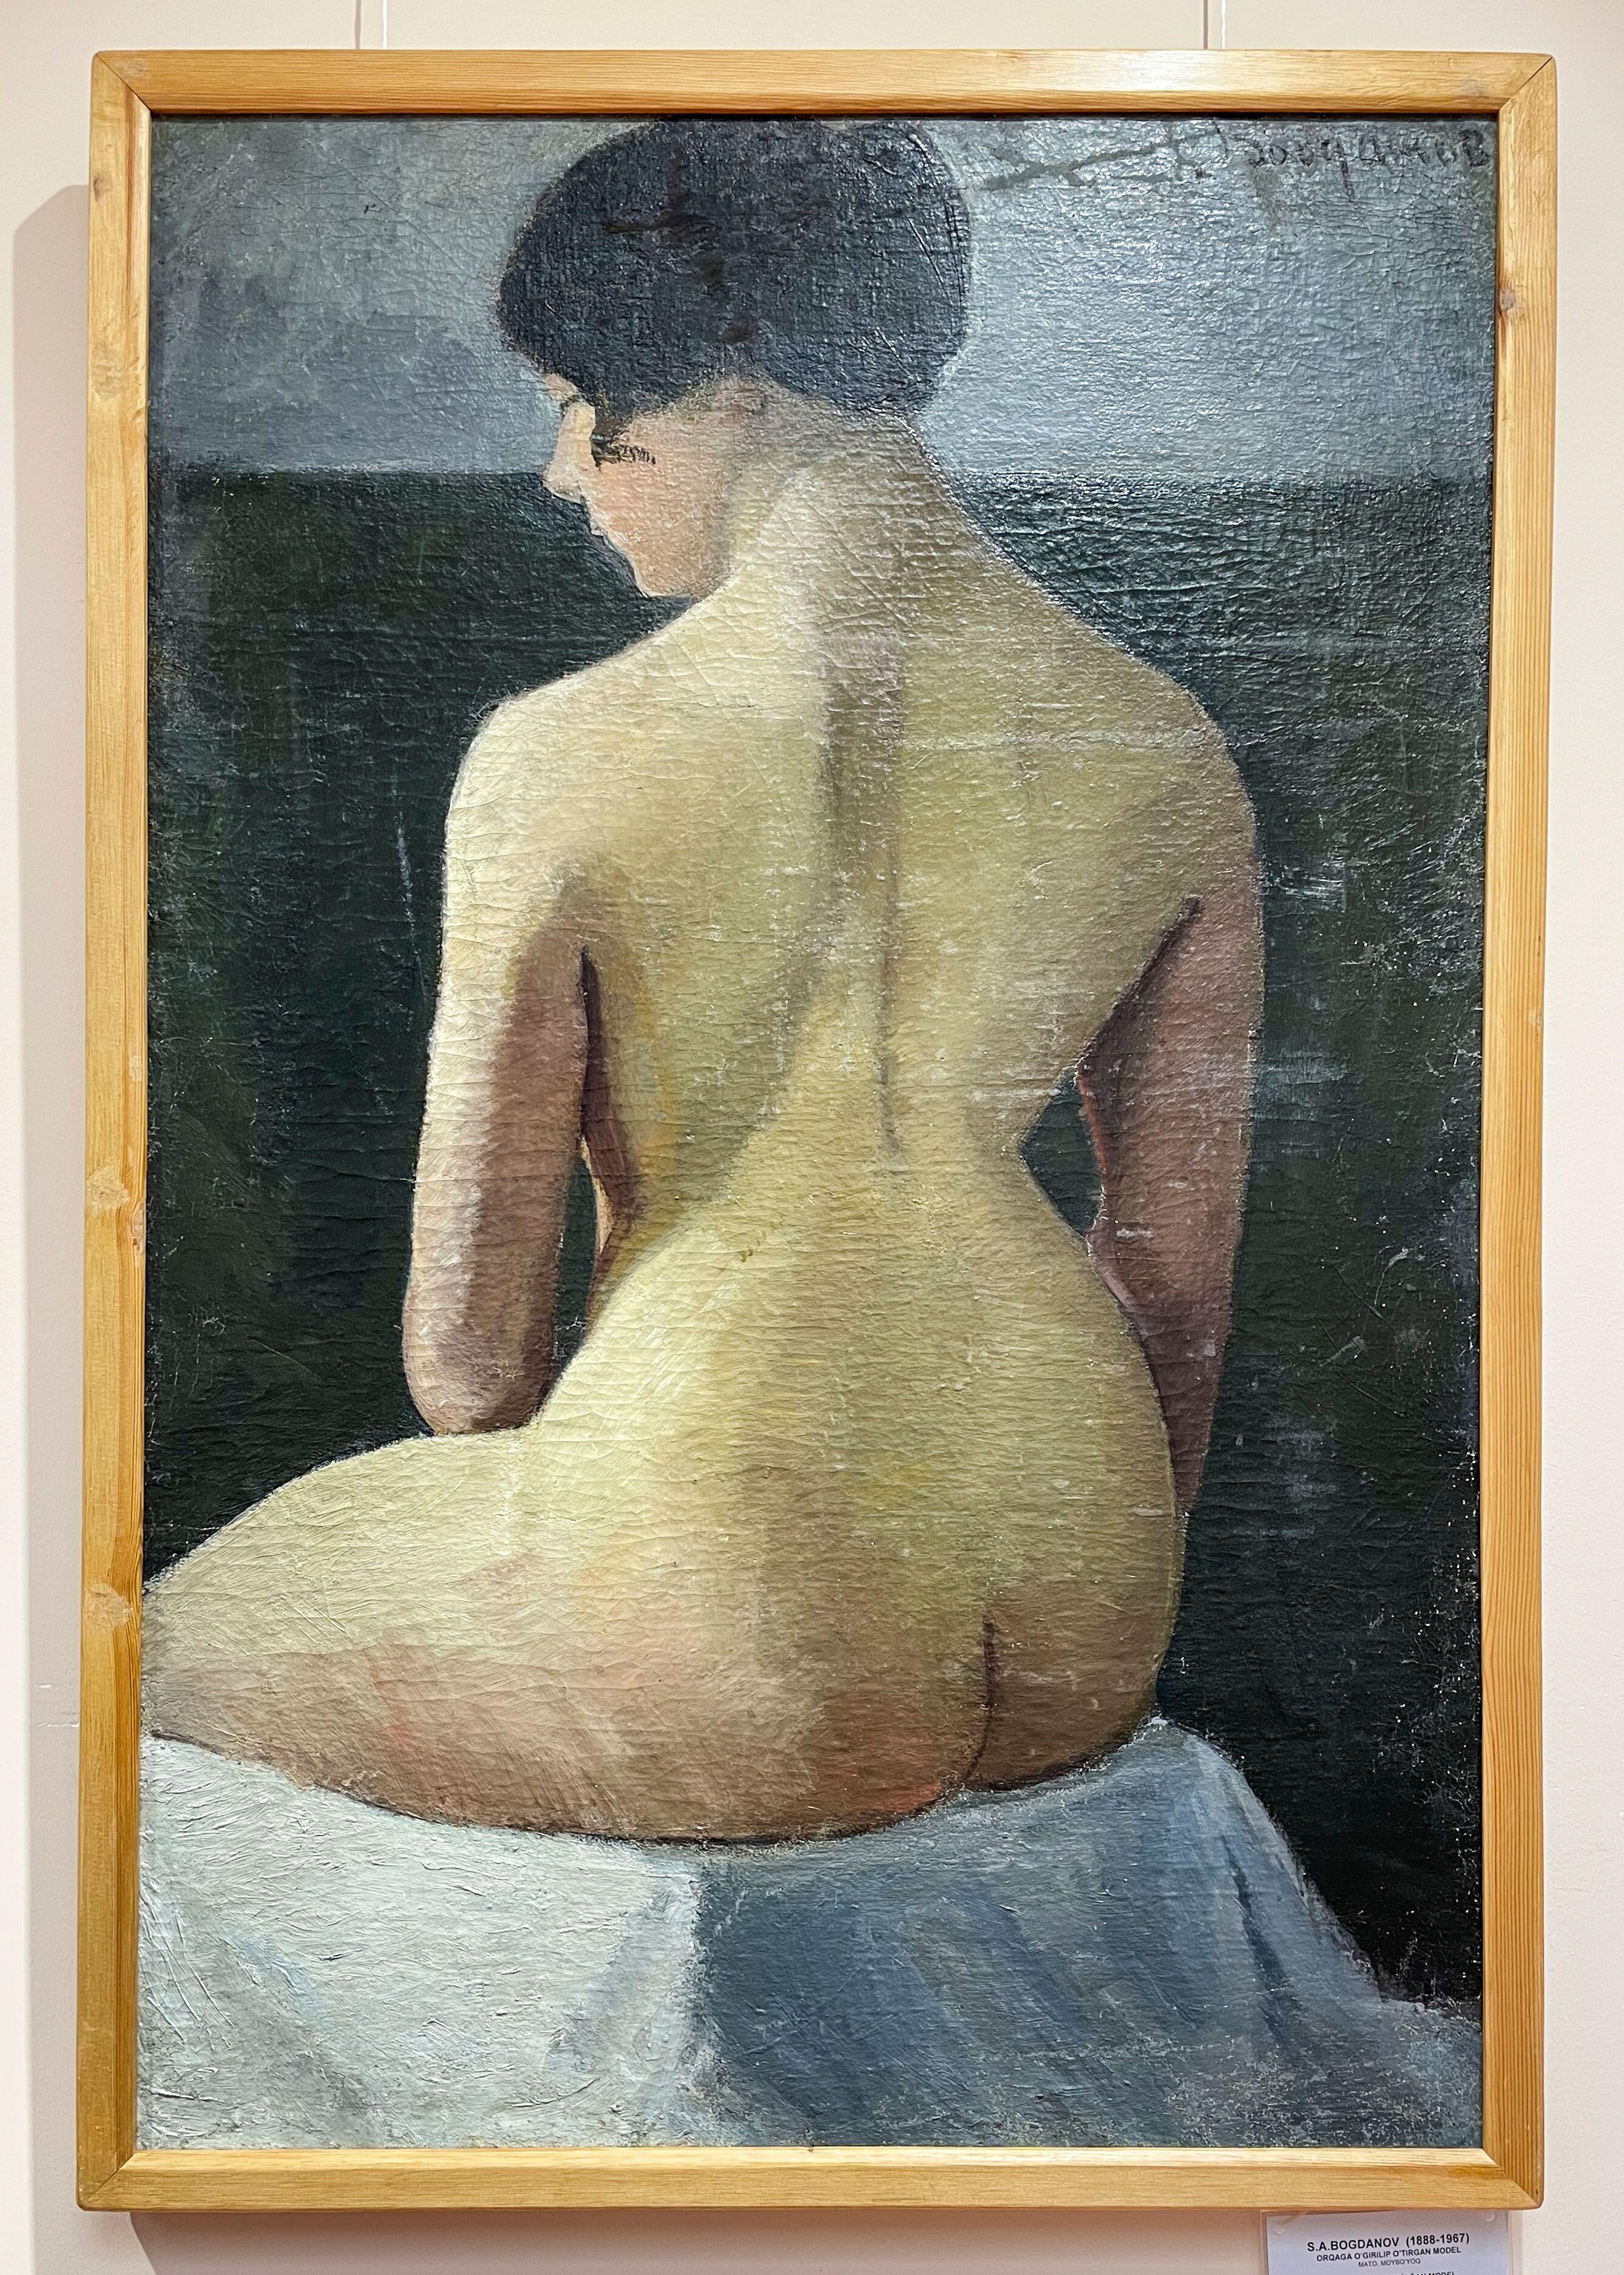 Секс в СССР: эротическая живопись советских художников | MAXIM